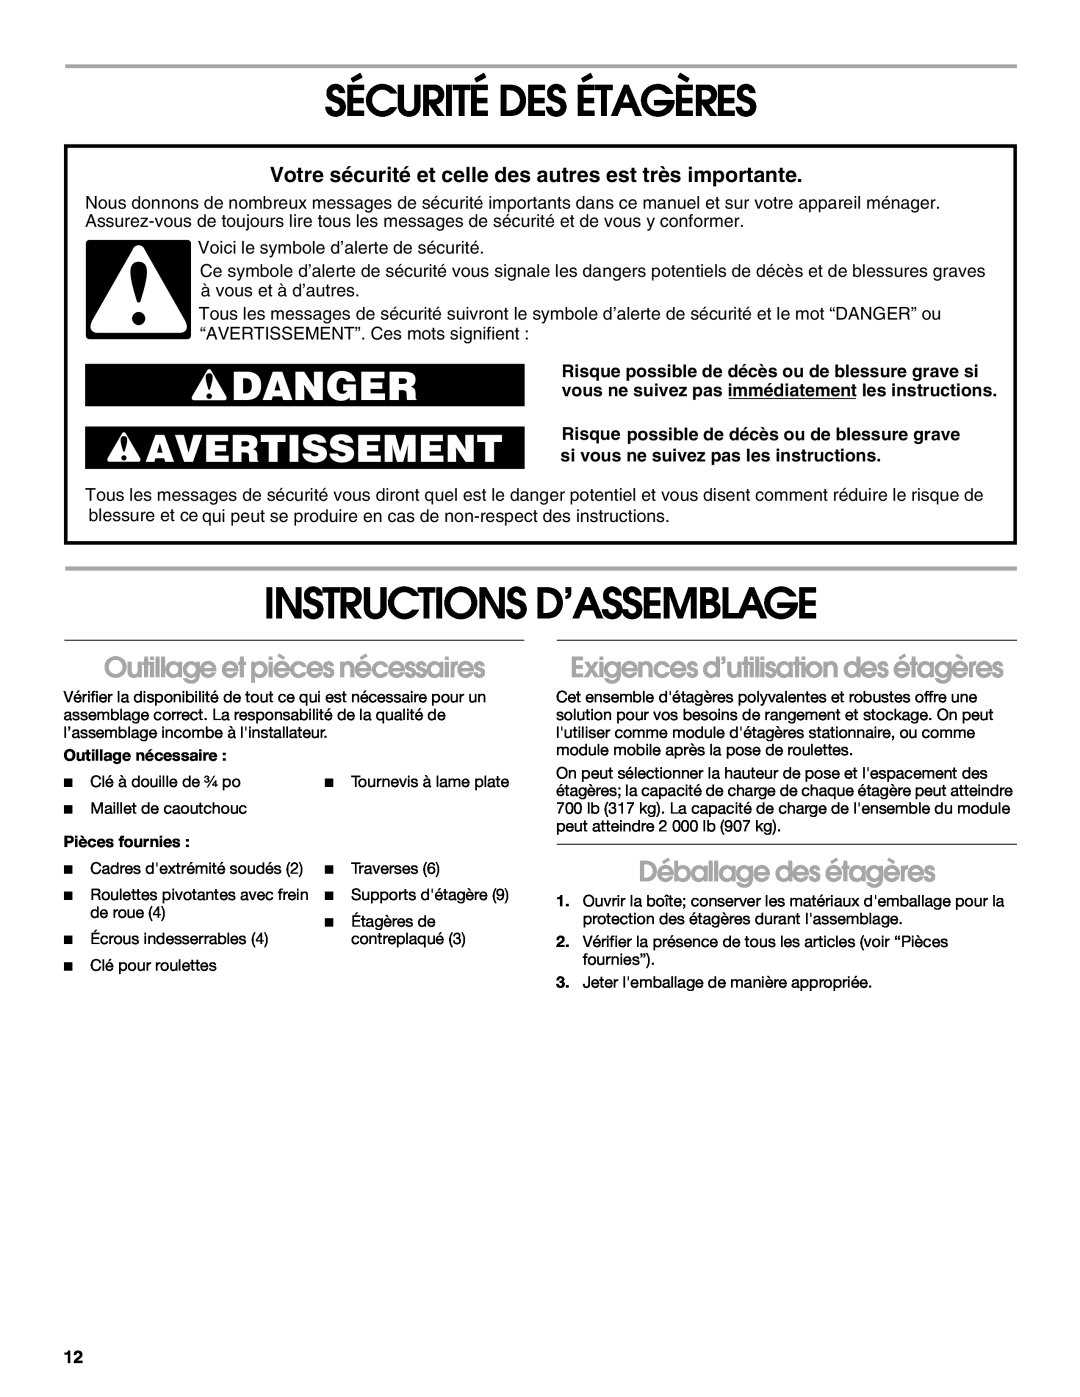 Gladiator Garageworks 2253351A manual Sécurité Des Étagères, Instructions D’Assemblage, Danger, Avertissement 